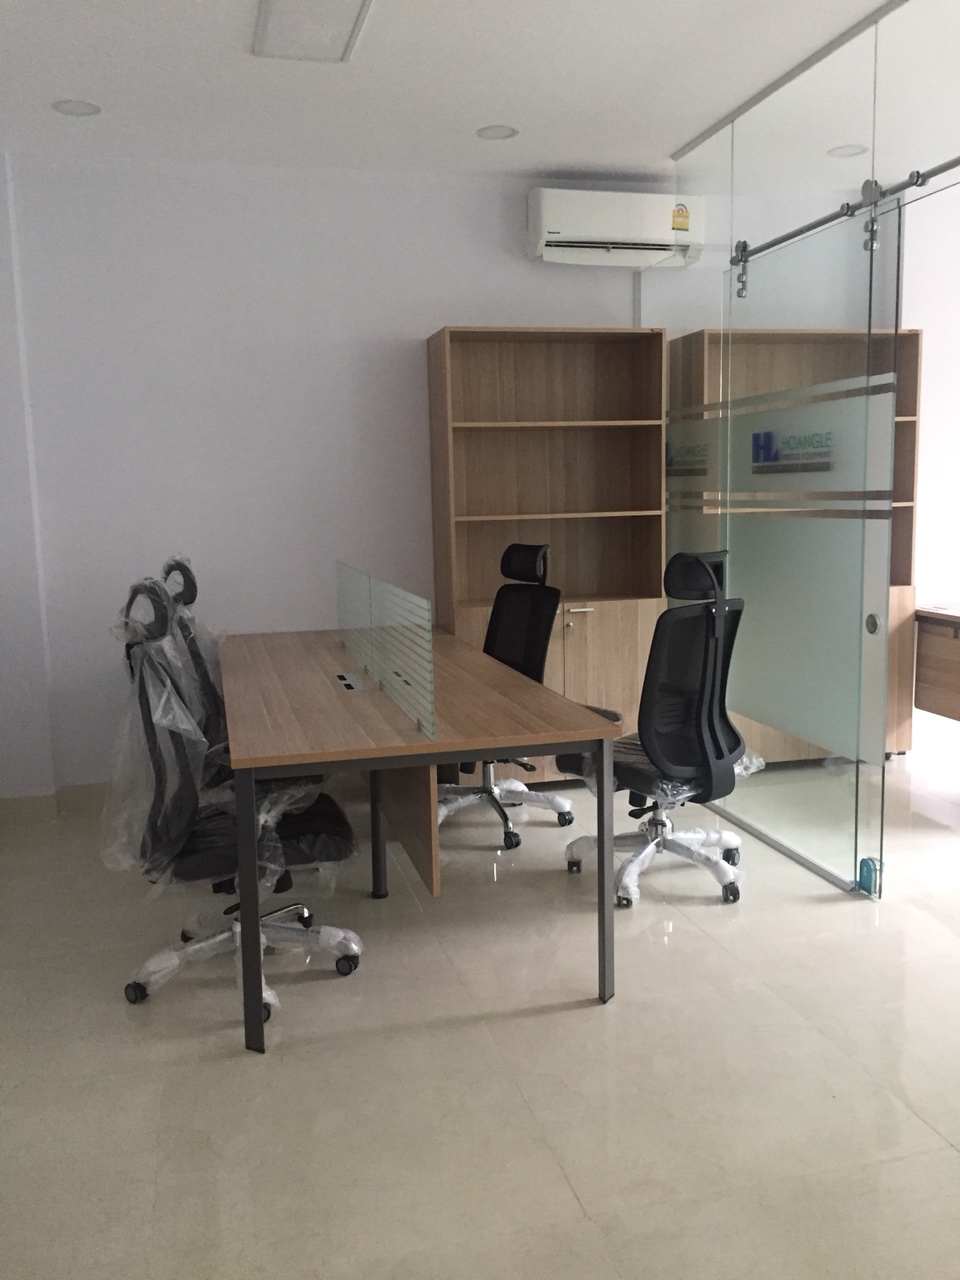 Cho thuê văn phòng trong tòa nhà mới xây ở trung tâm K300, diện tích cho thuê 40m2 - 100m2/sàn